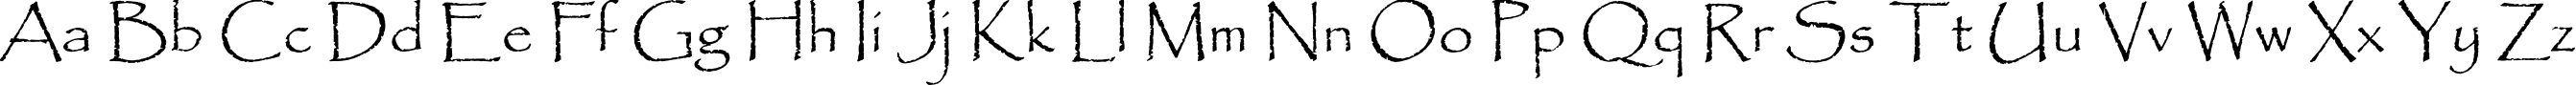 Пример написания английского алфавита шрифтом Papyrus